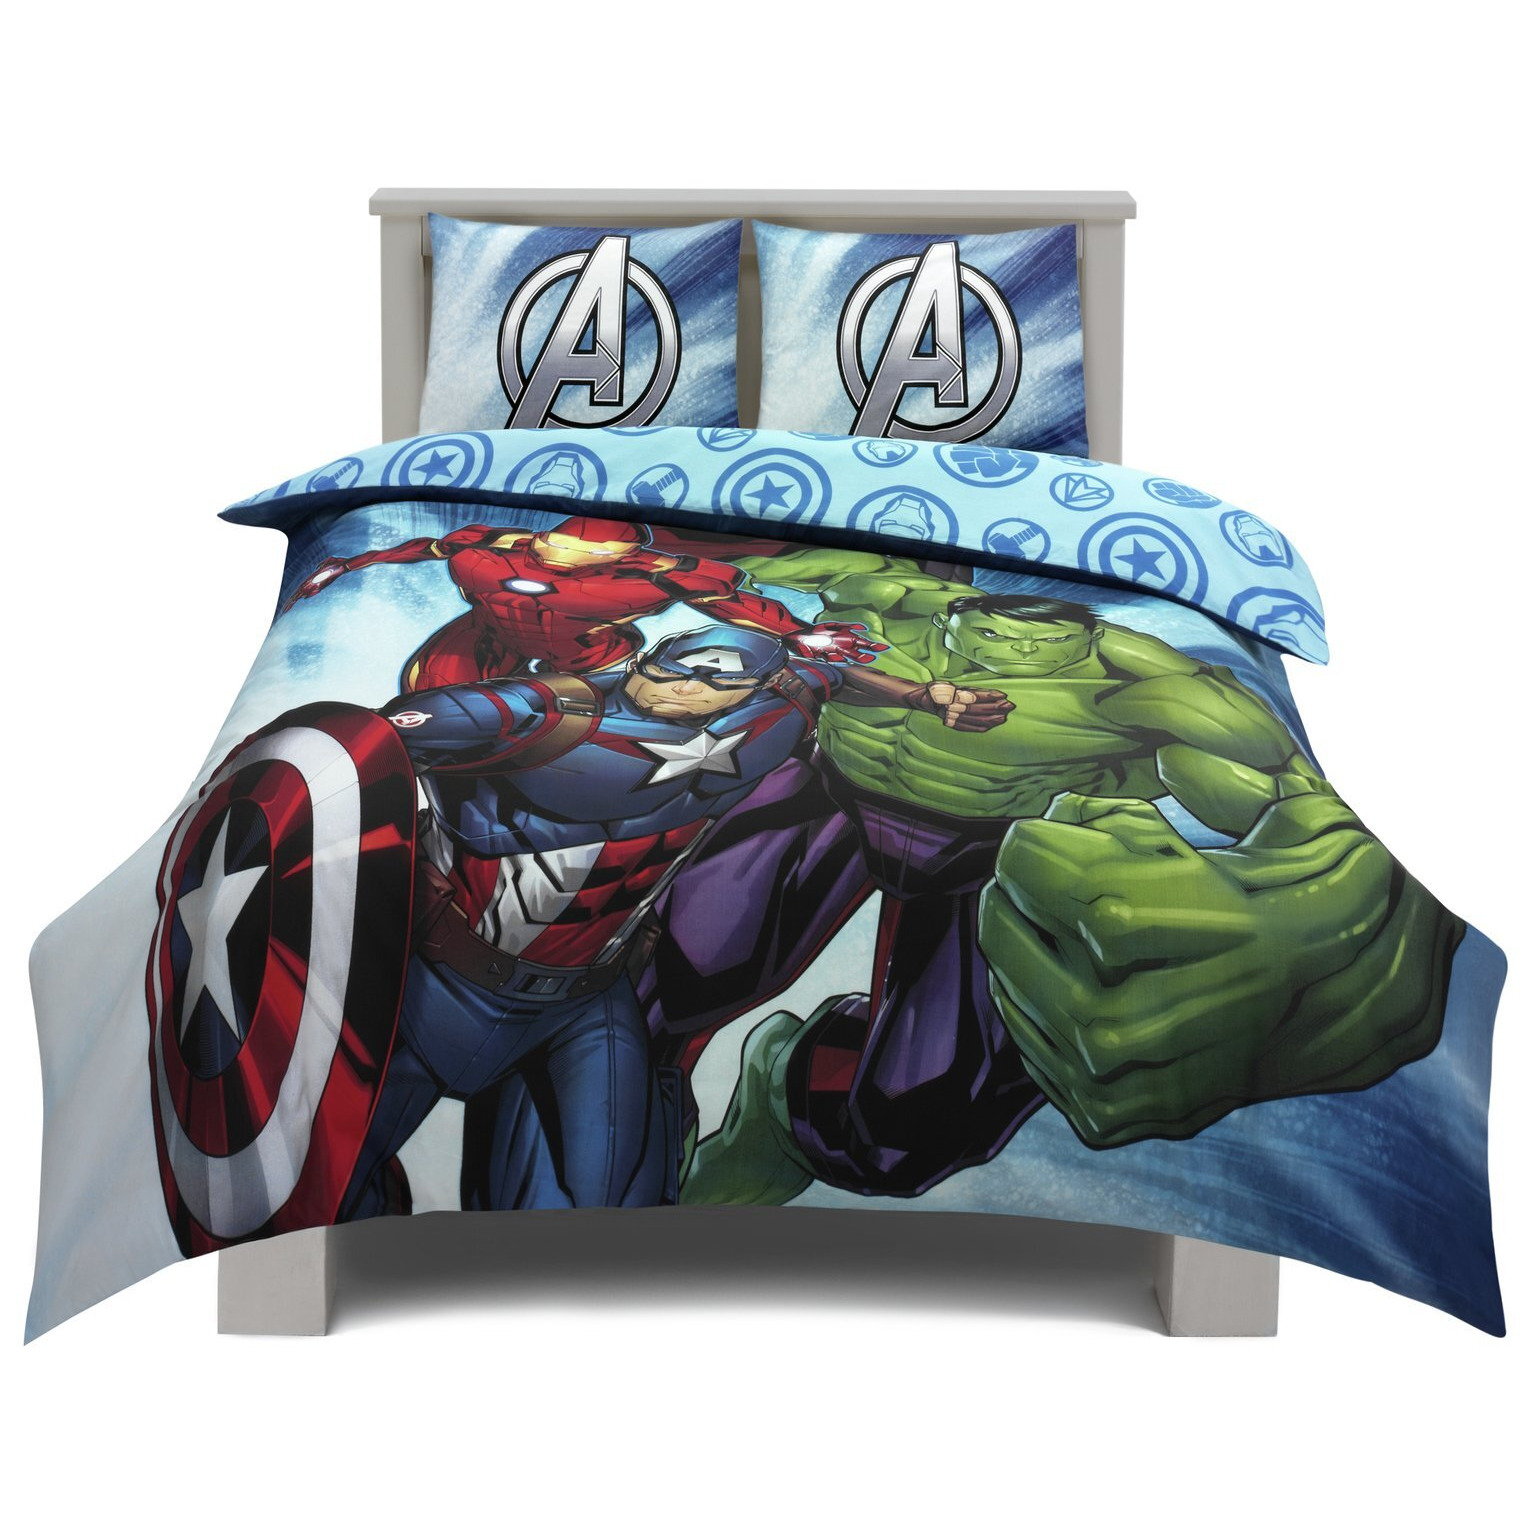 Marvel Kids Blue Bedding Set - Double - image 1